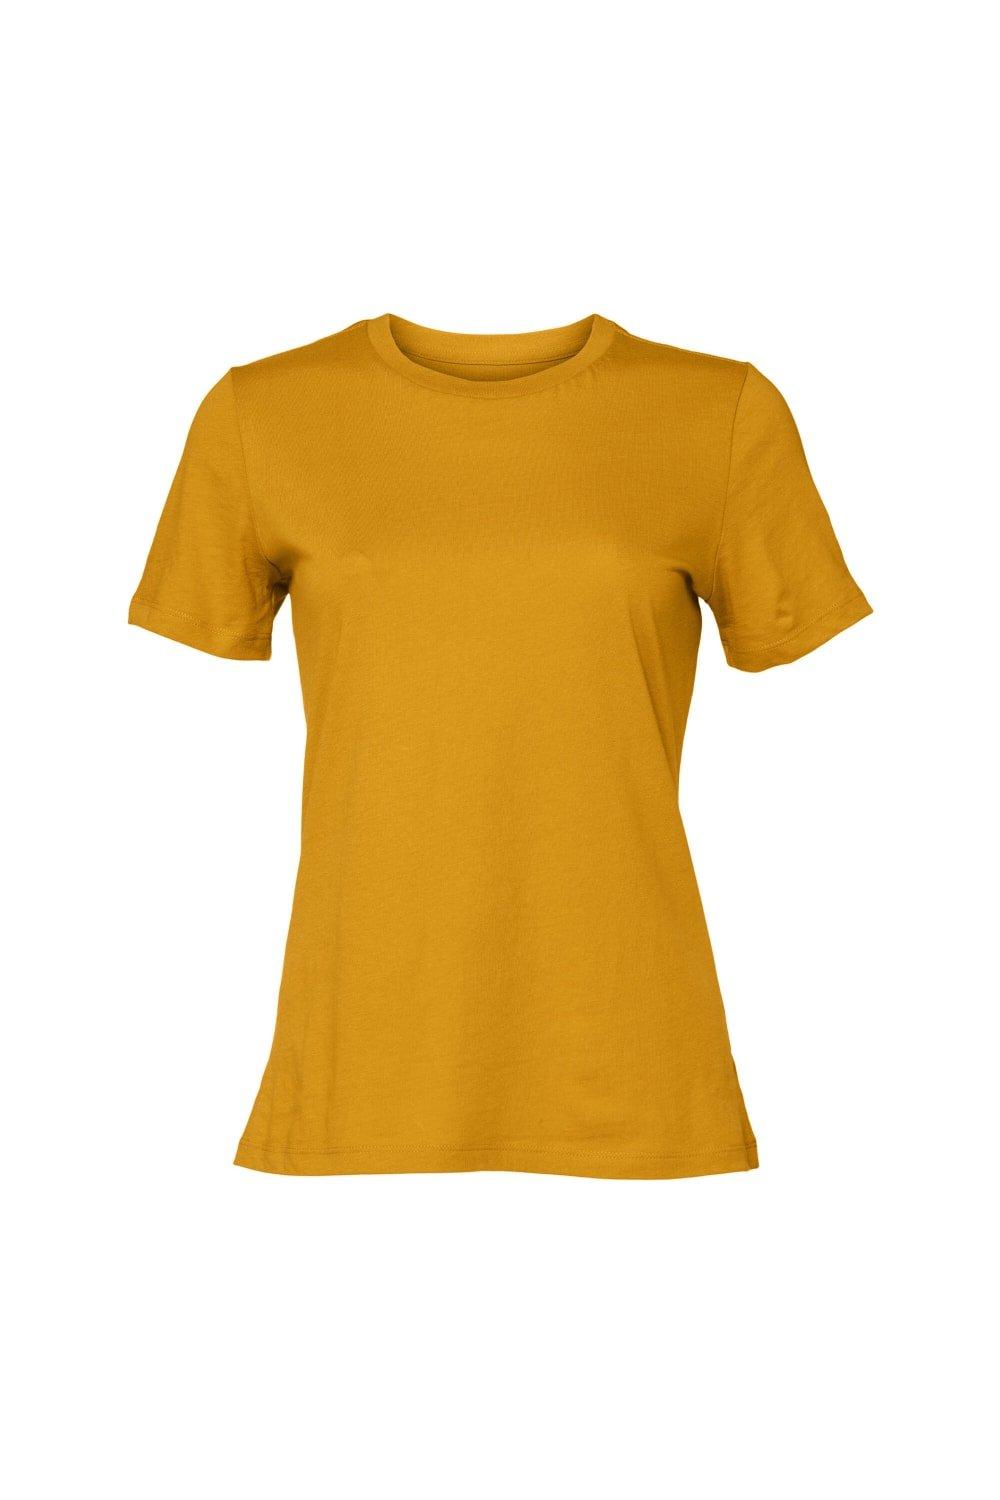 Футболка из джерси с короткими рукавами Bella + Canvas, желтый молодежная футболка из джерси с короткими рукавами bella canvas темно синий